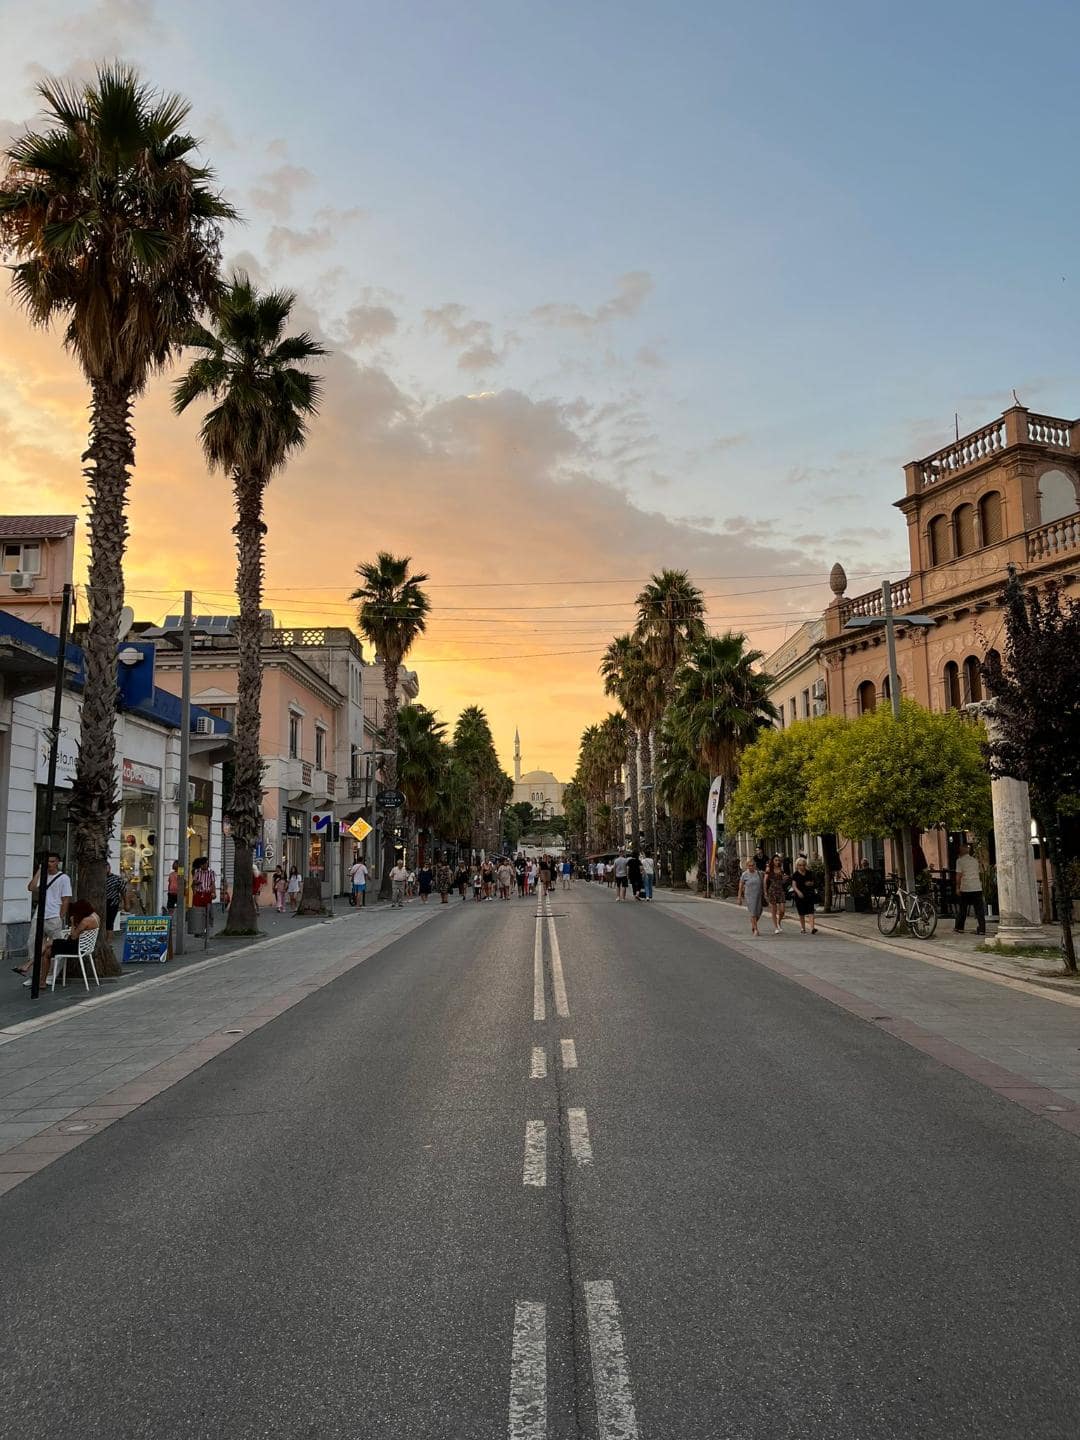 Hlavná ulica s vysokými palmami počas západu slnka.